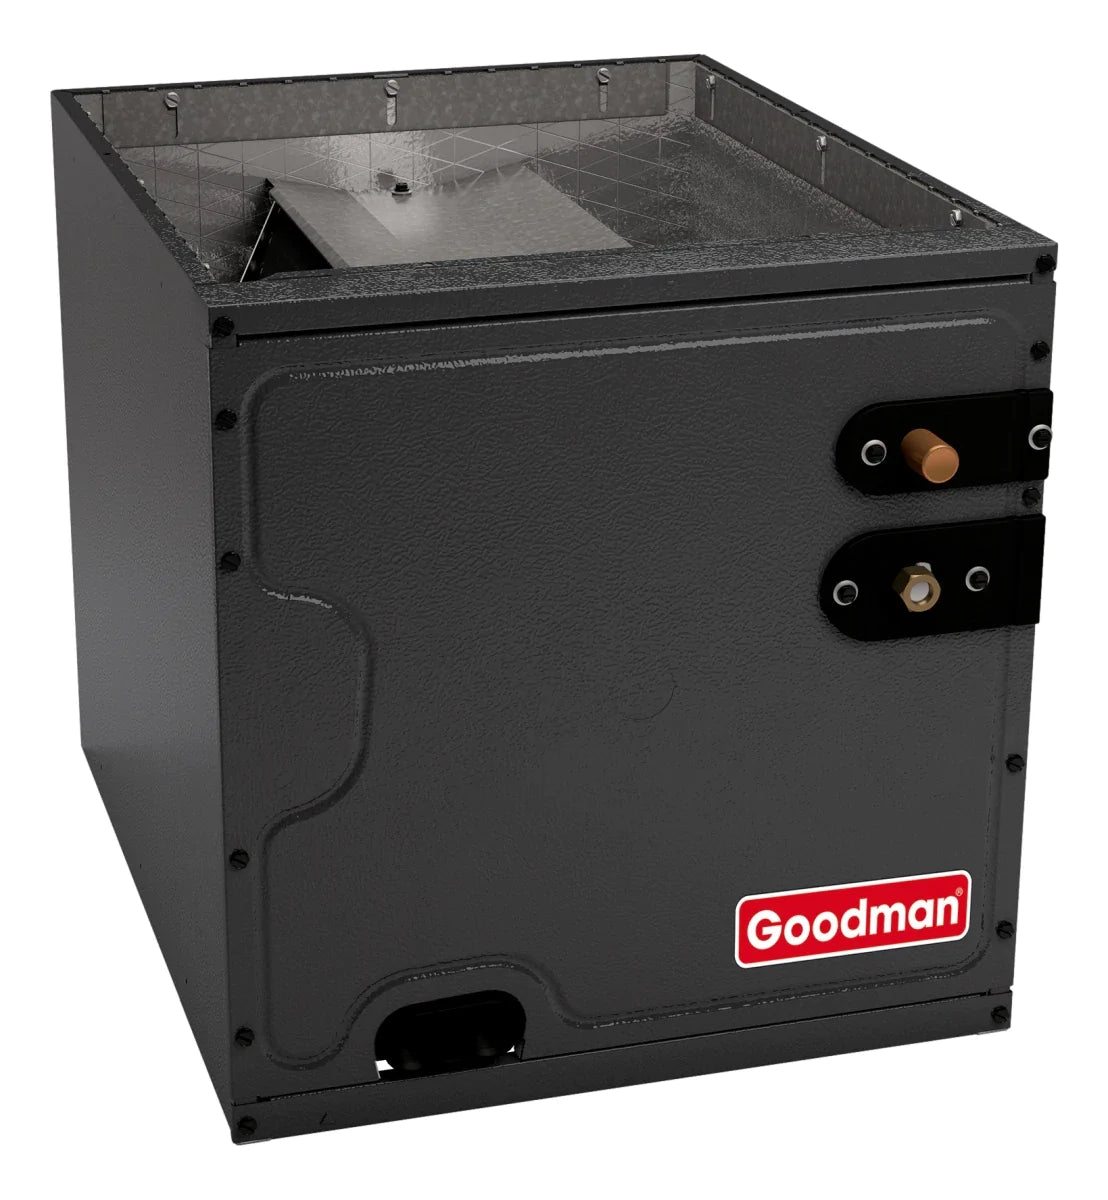 Goodman 3 TON 15 SEER2 Downflow AC system with 80% AFUE 60k BTU 2 stage Low NOx Furnace (GSXM403610, CAPTA3626B4, GCVC800603BX)